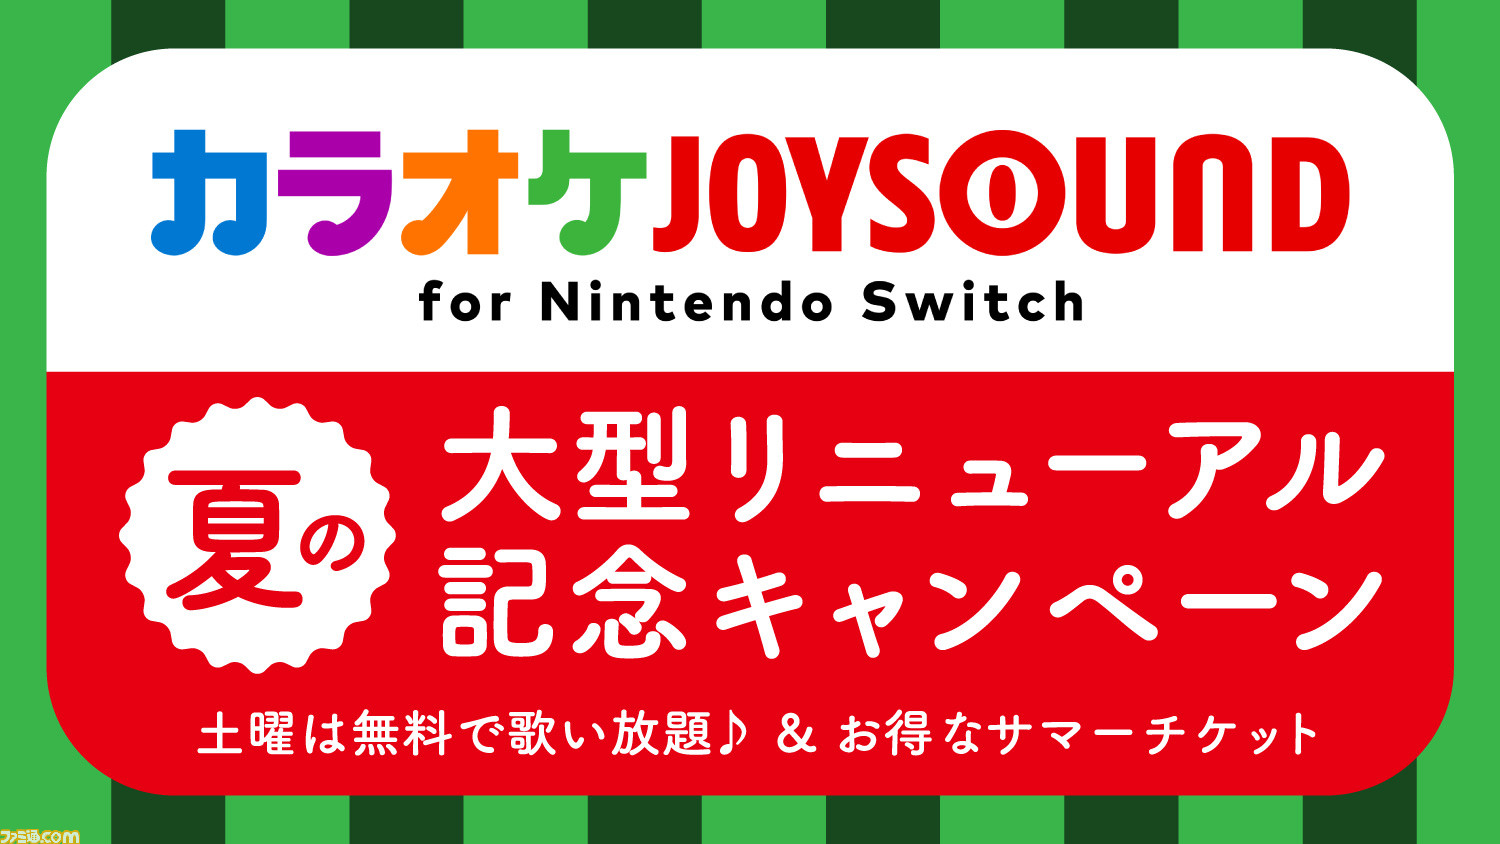 カラオケjoysound For Nintendo Switch が7月27日に大型リニューアル 7月28日よりリニューアル記念キャンペーンがスタート ファミ通 Com